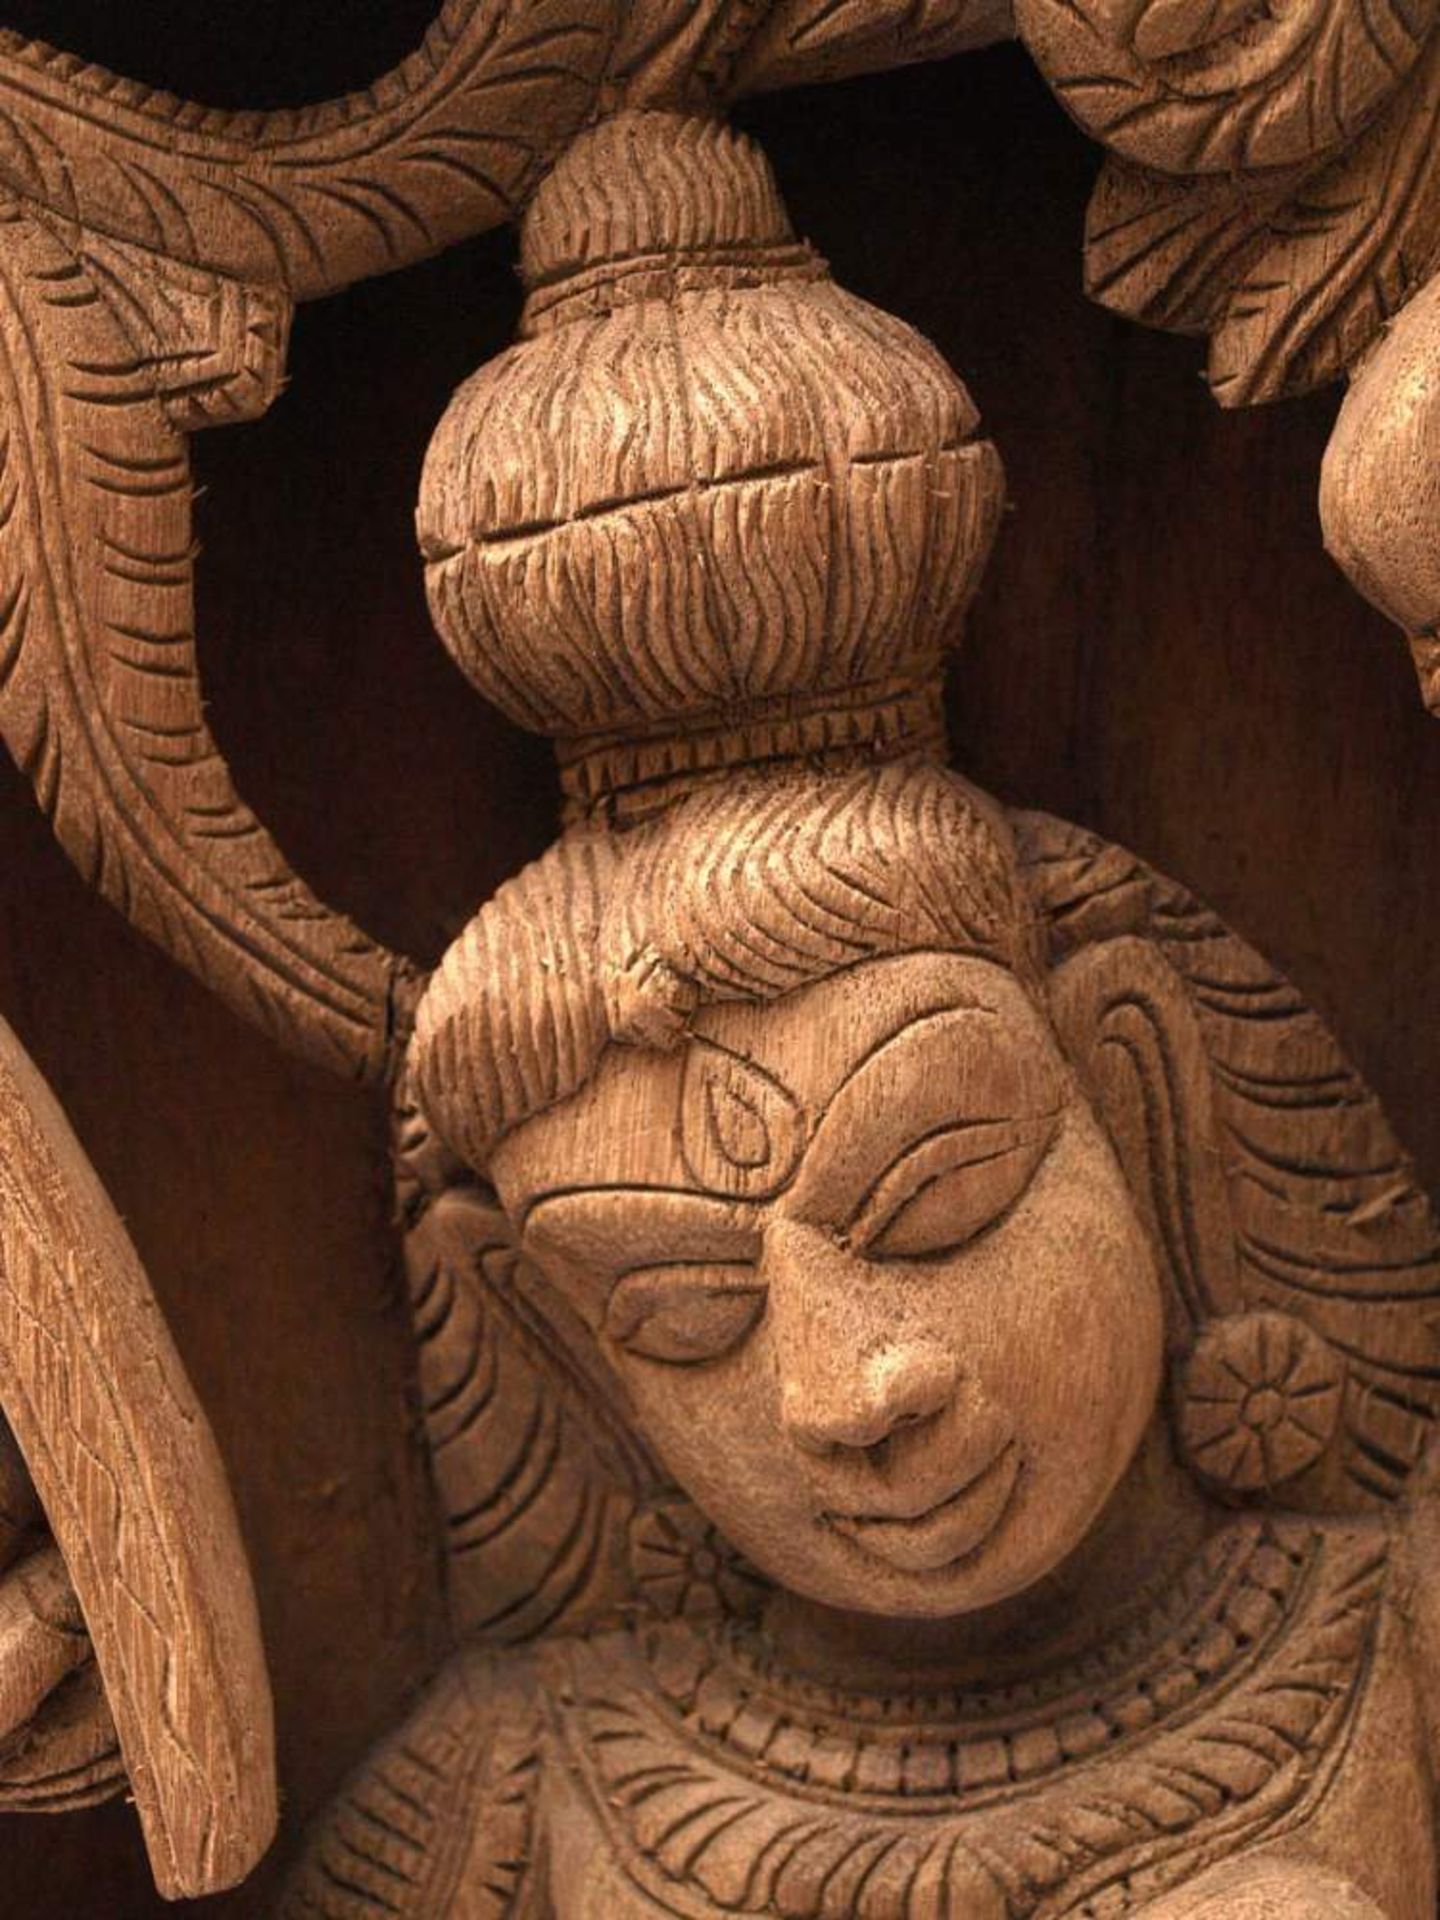 Stele, Indien, 18./19.Jhdt.Tanzende Göttin, darüber Sinha Vyahas. Geschnitztes Holz. 65x34,5x9,5cm. - Bild 3 aus 4